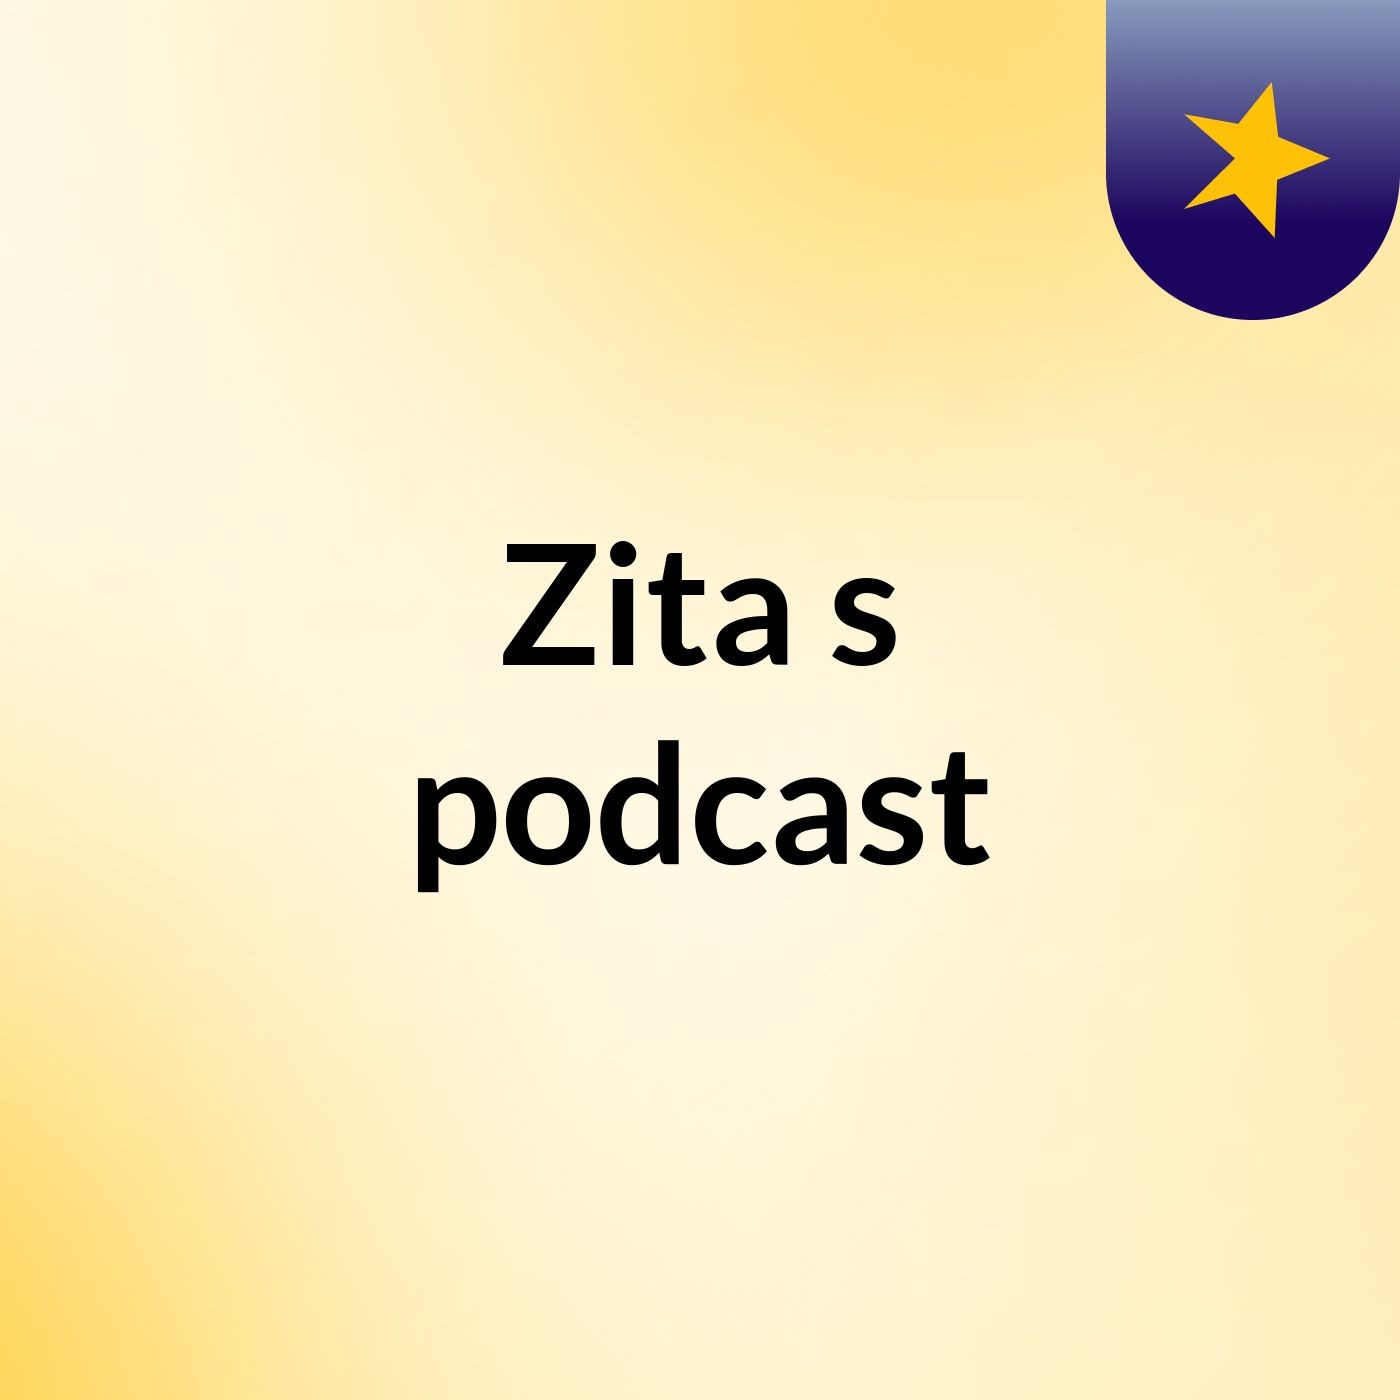 Zita's podcast